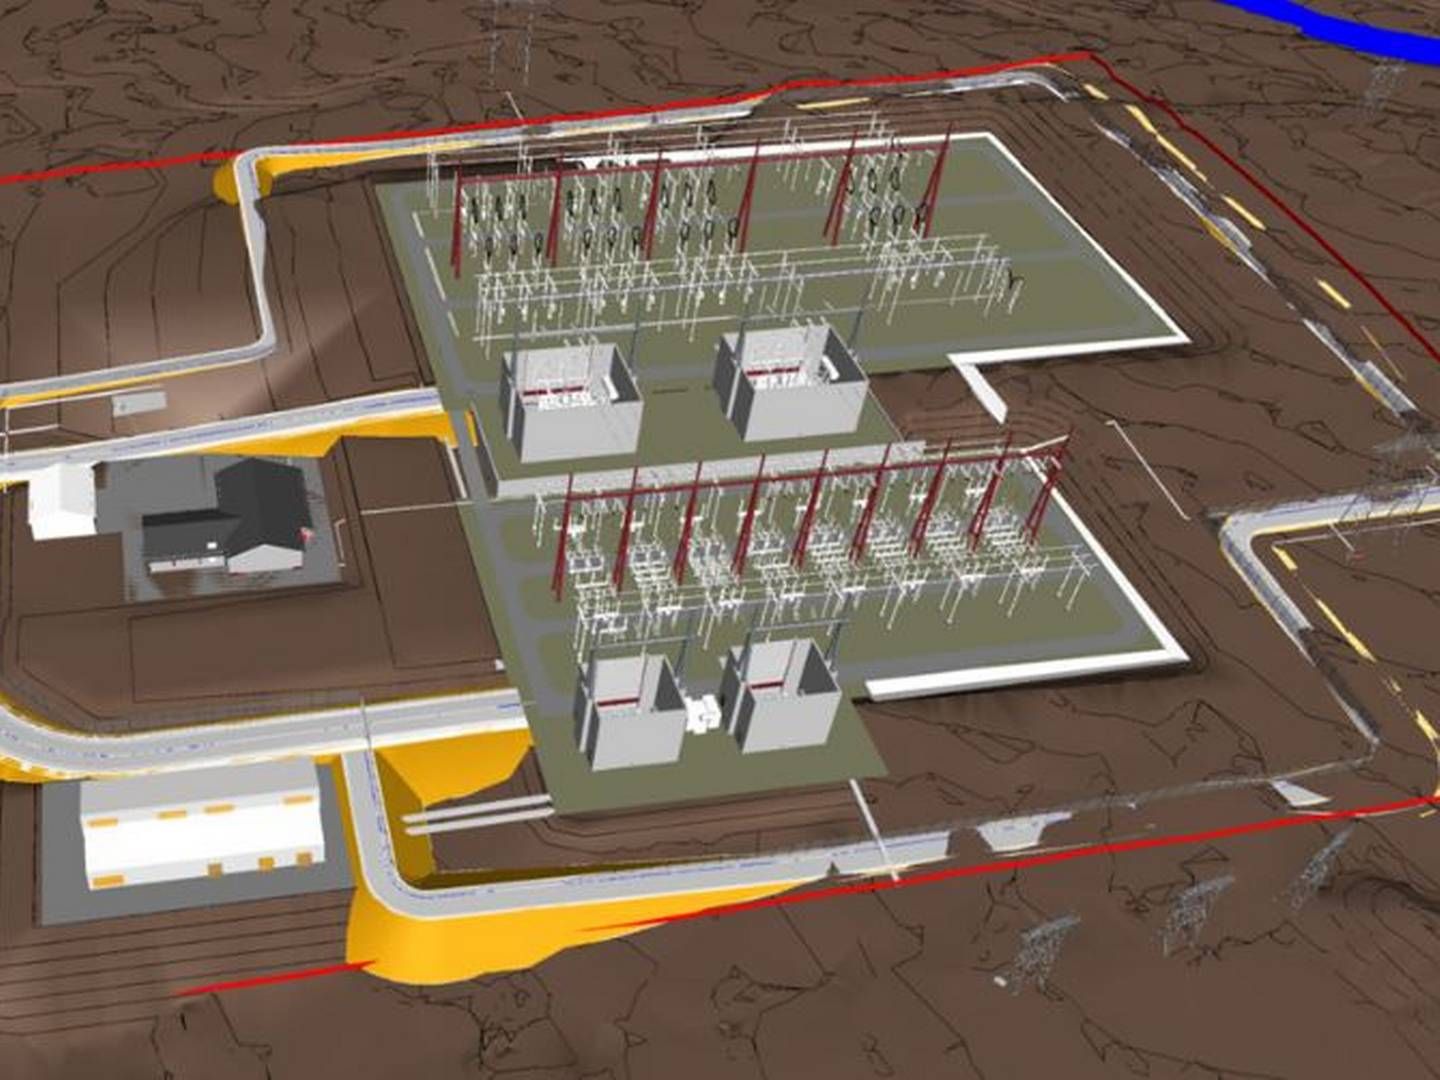 DET VENTES: Vinnelys transformatorstasjon oppgraderes til en verdi av over en halv milliard kroner. Illustrasjon. | Foto: Statnett